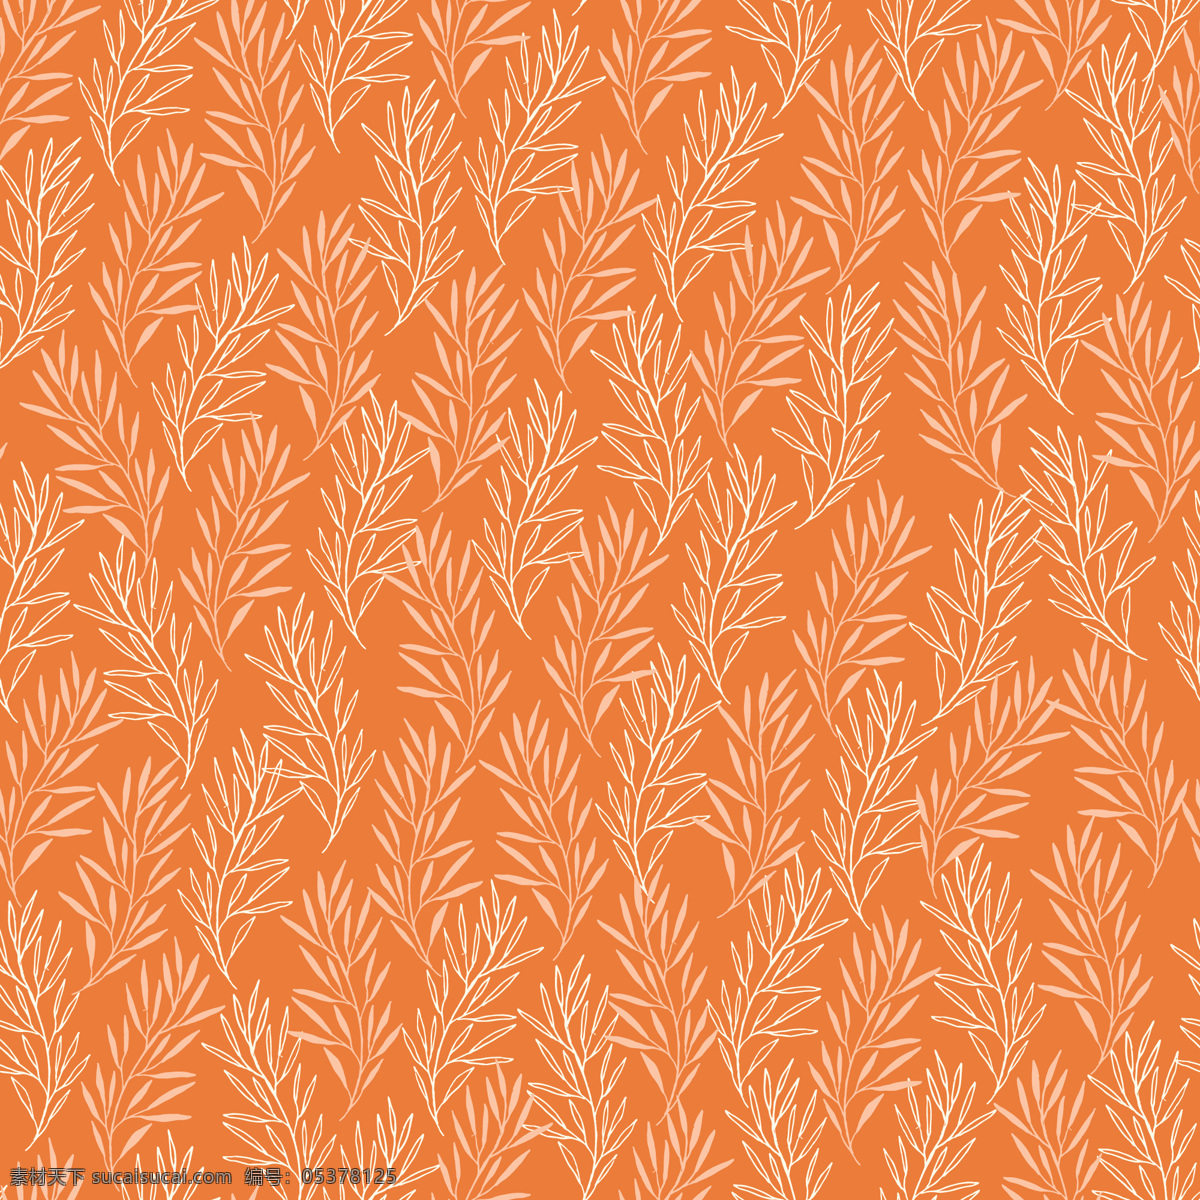 时尚 喜庆 橙色 底色 壁纸 图案 装饰设计 小草 壁纸图案 树苗 稻穗